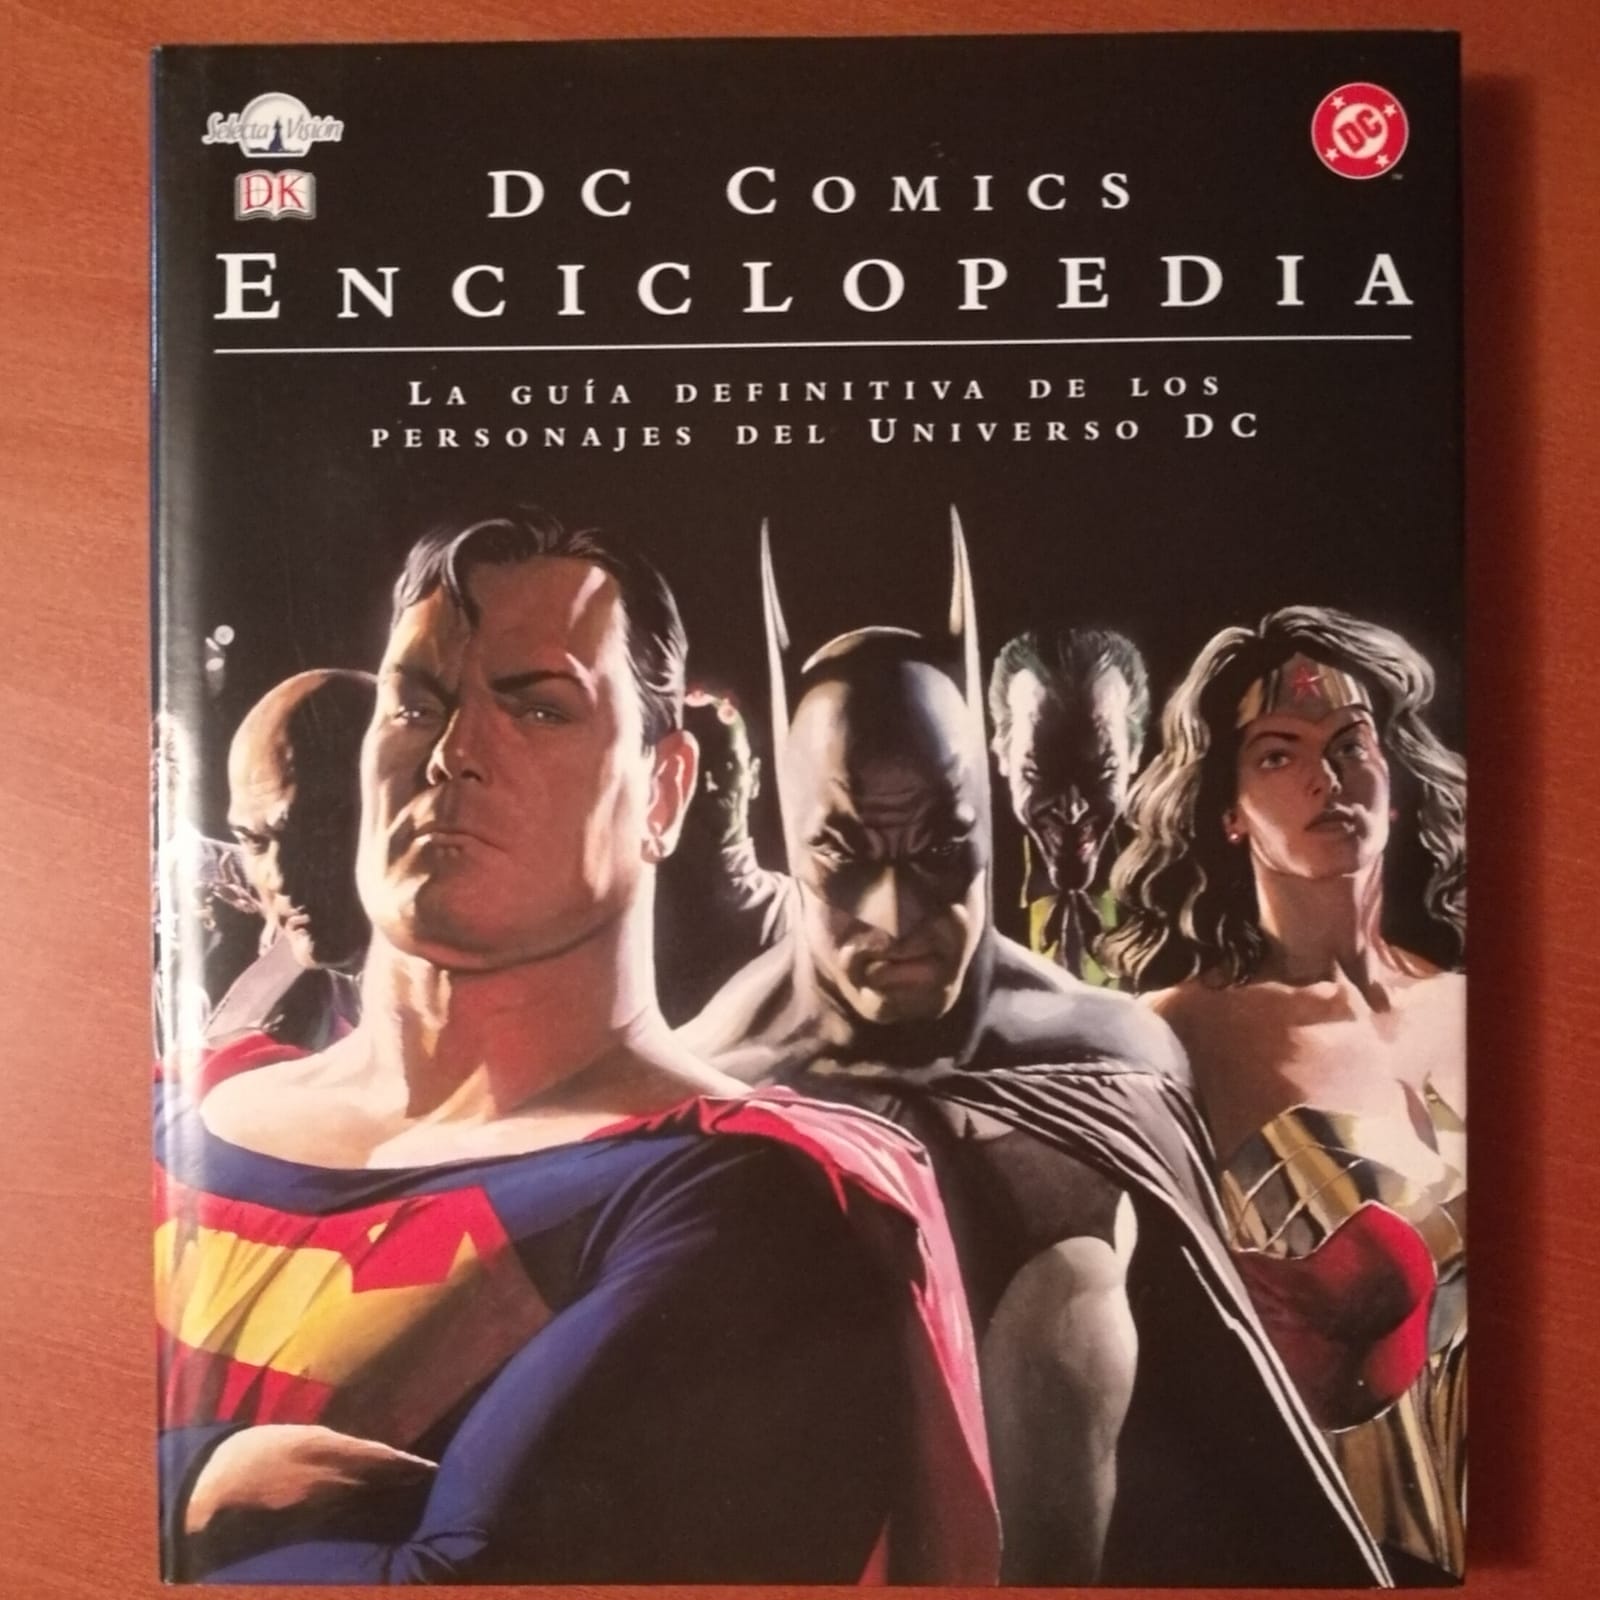 DC COMICS ENCICLOPEDIA: La guia definitiva de los personajes del universo